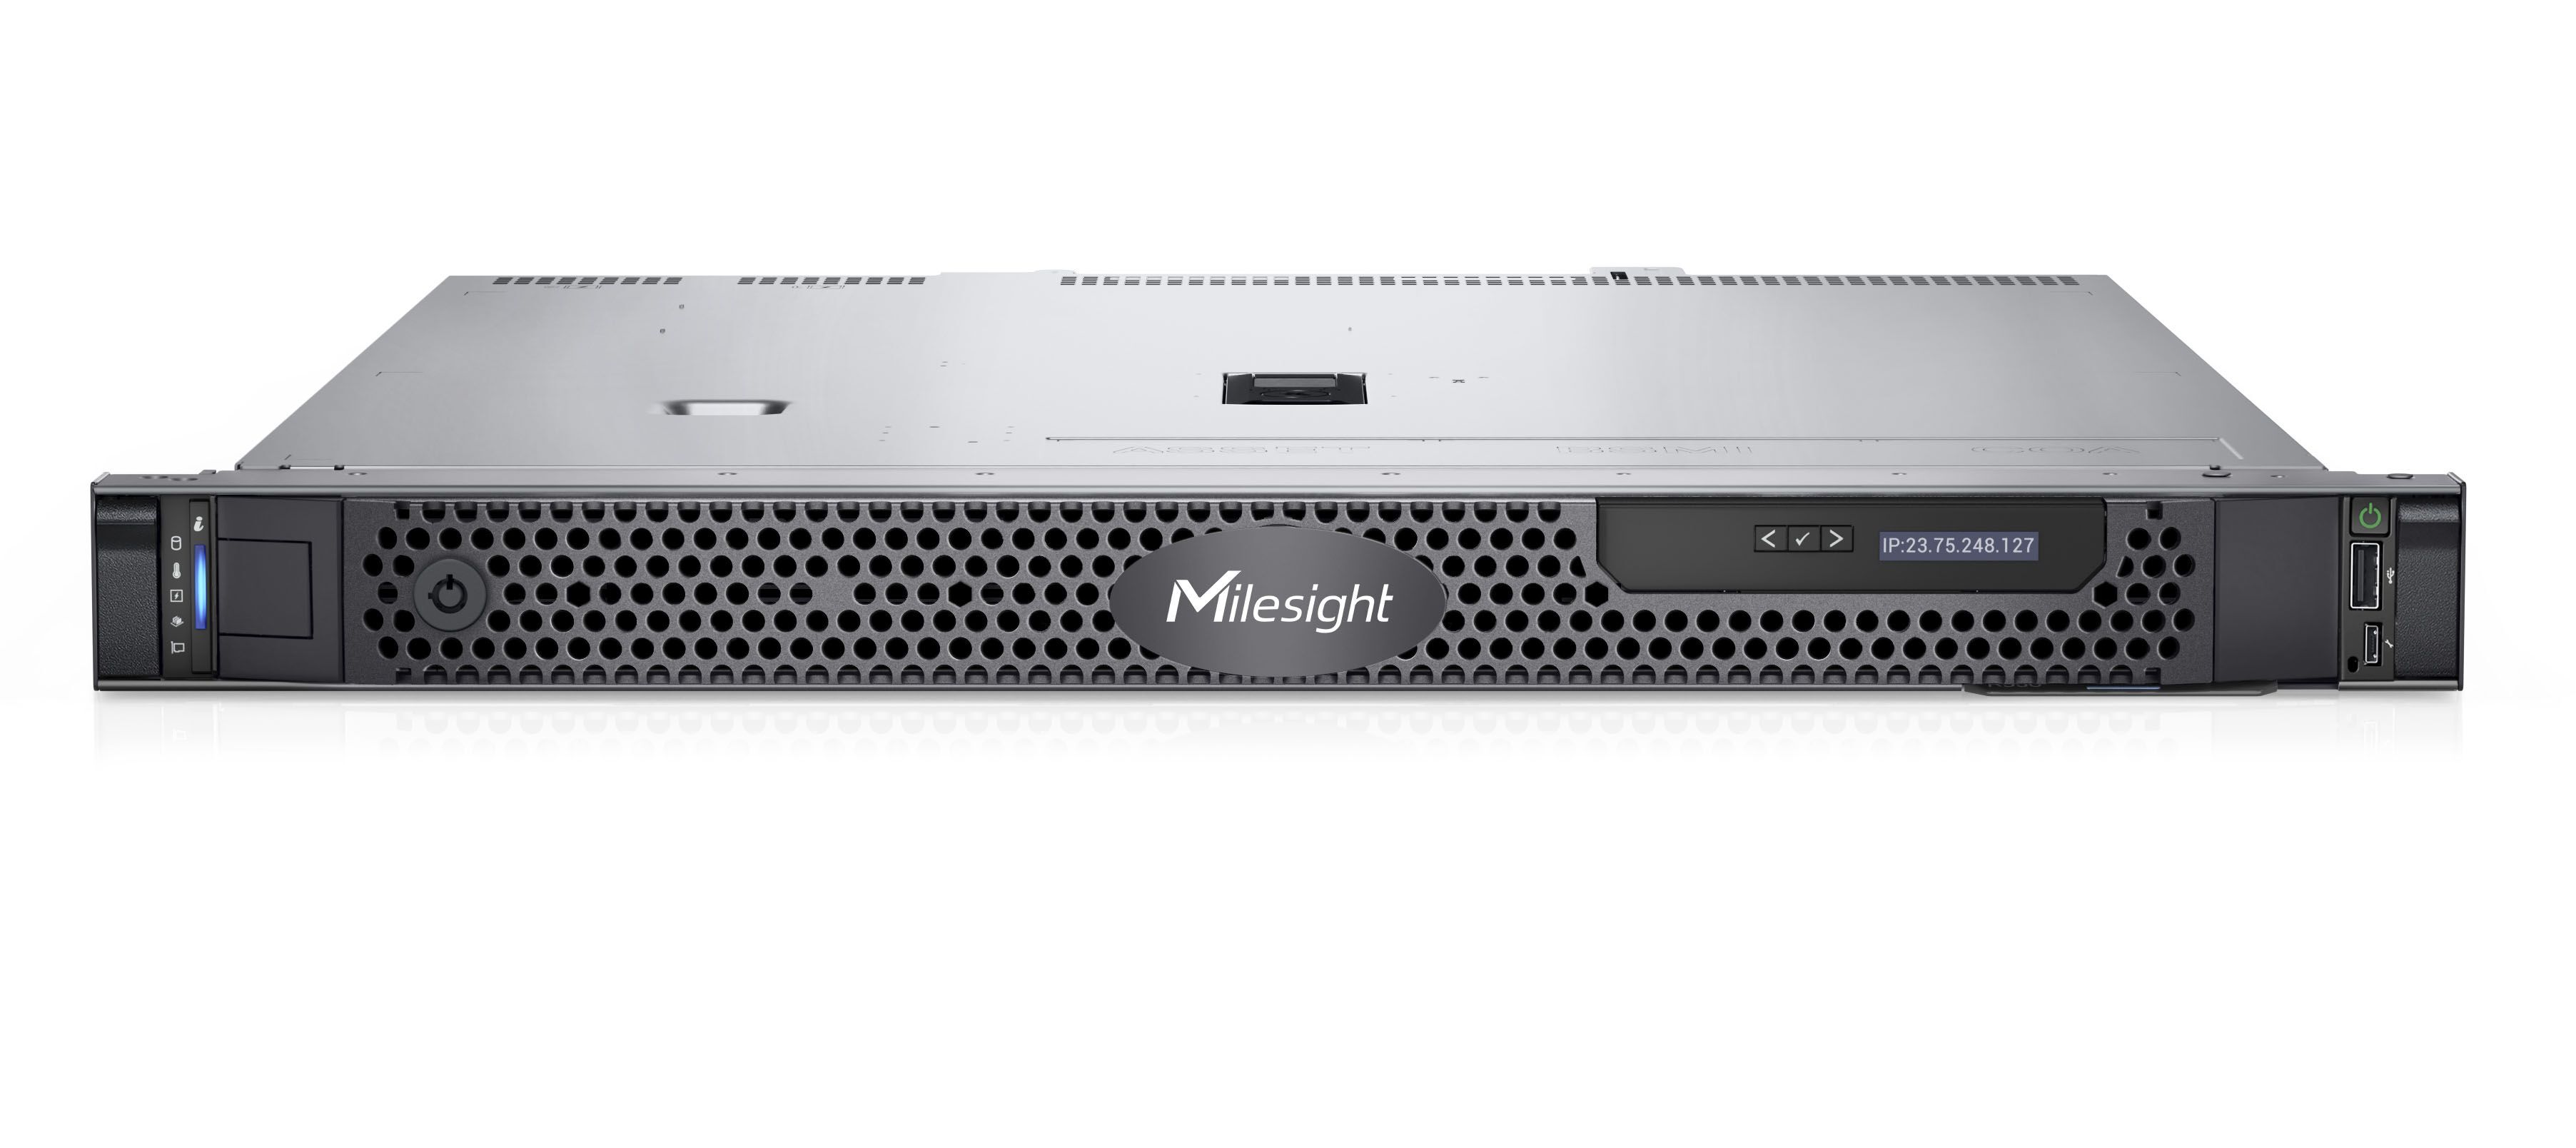 MS-VE0404-S 64 video stream VMS server